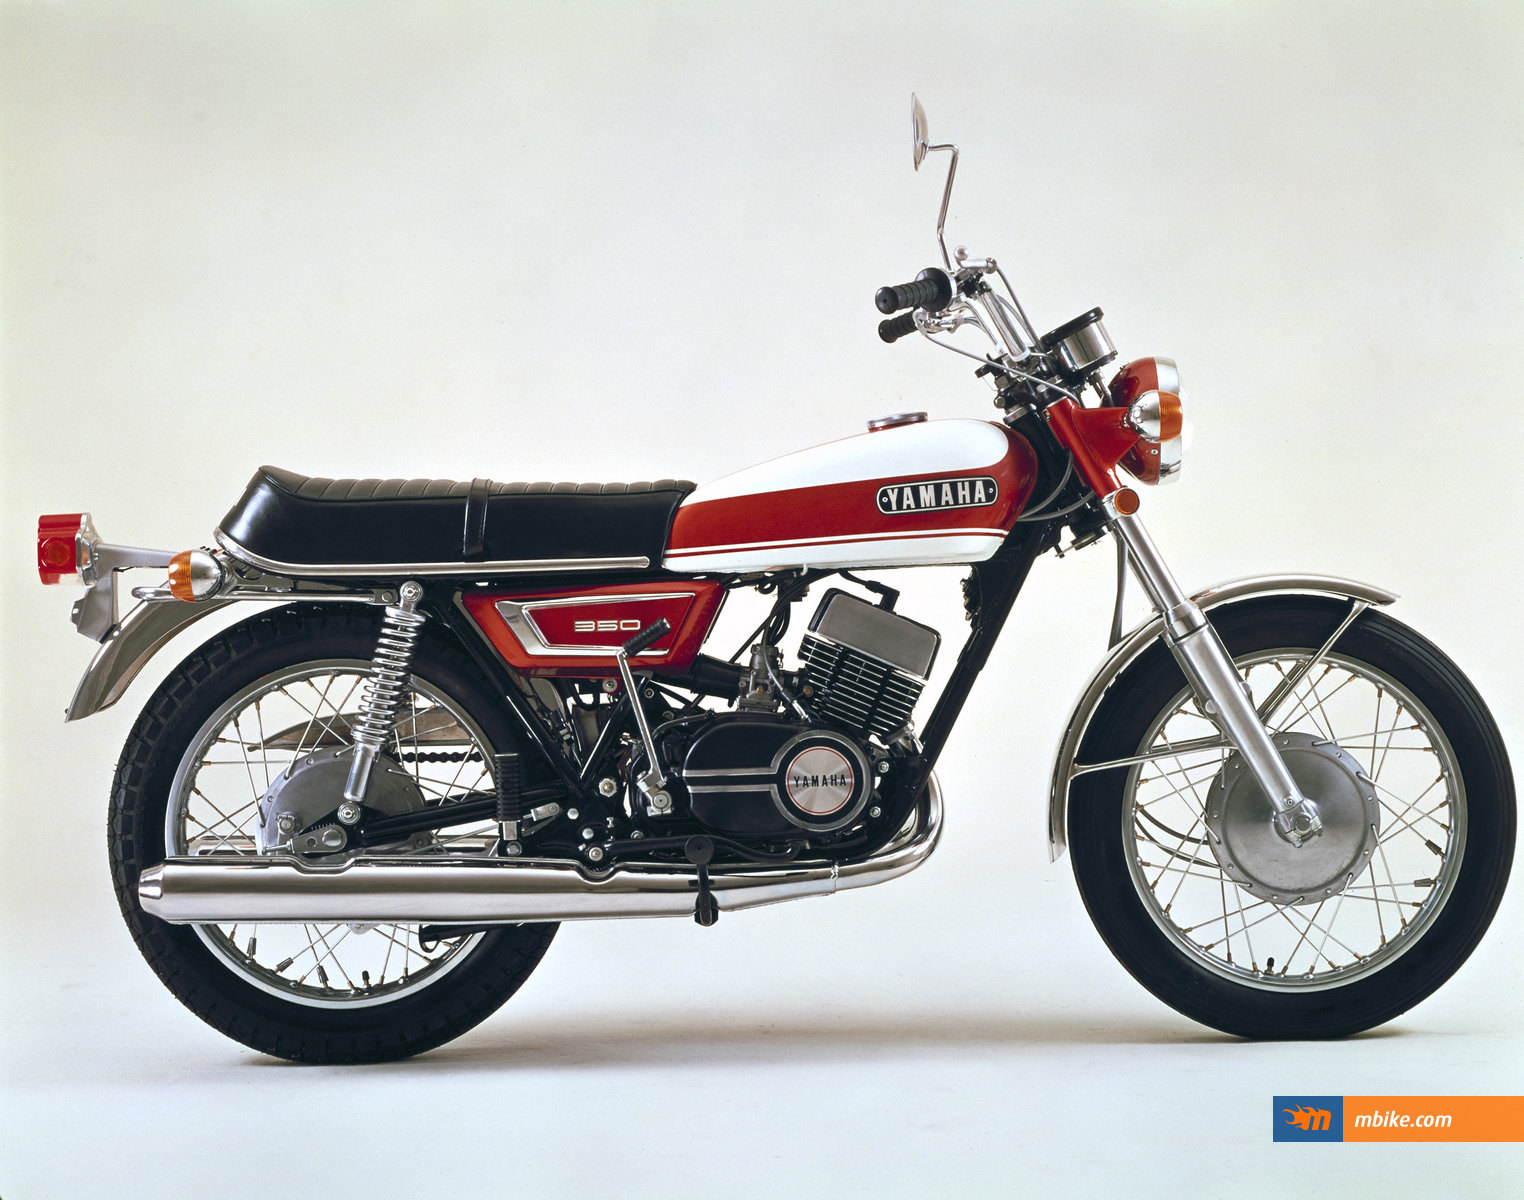 1970 Yamaha RX 350